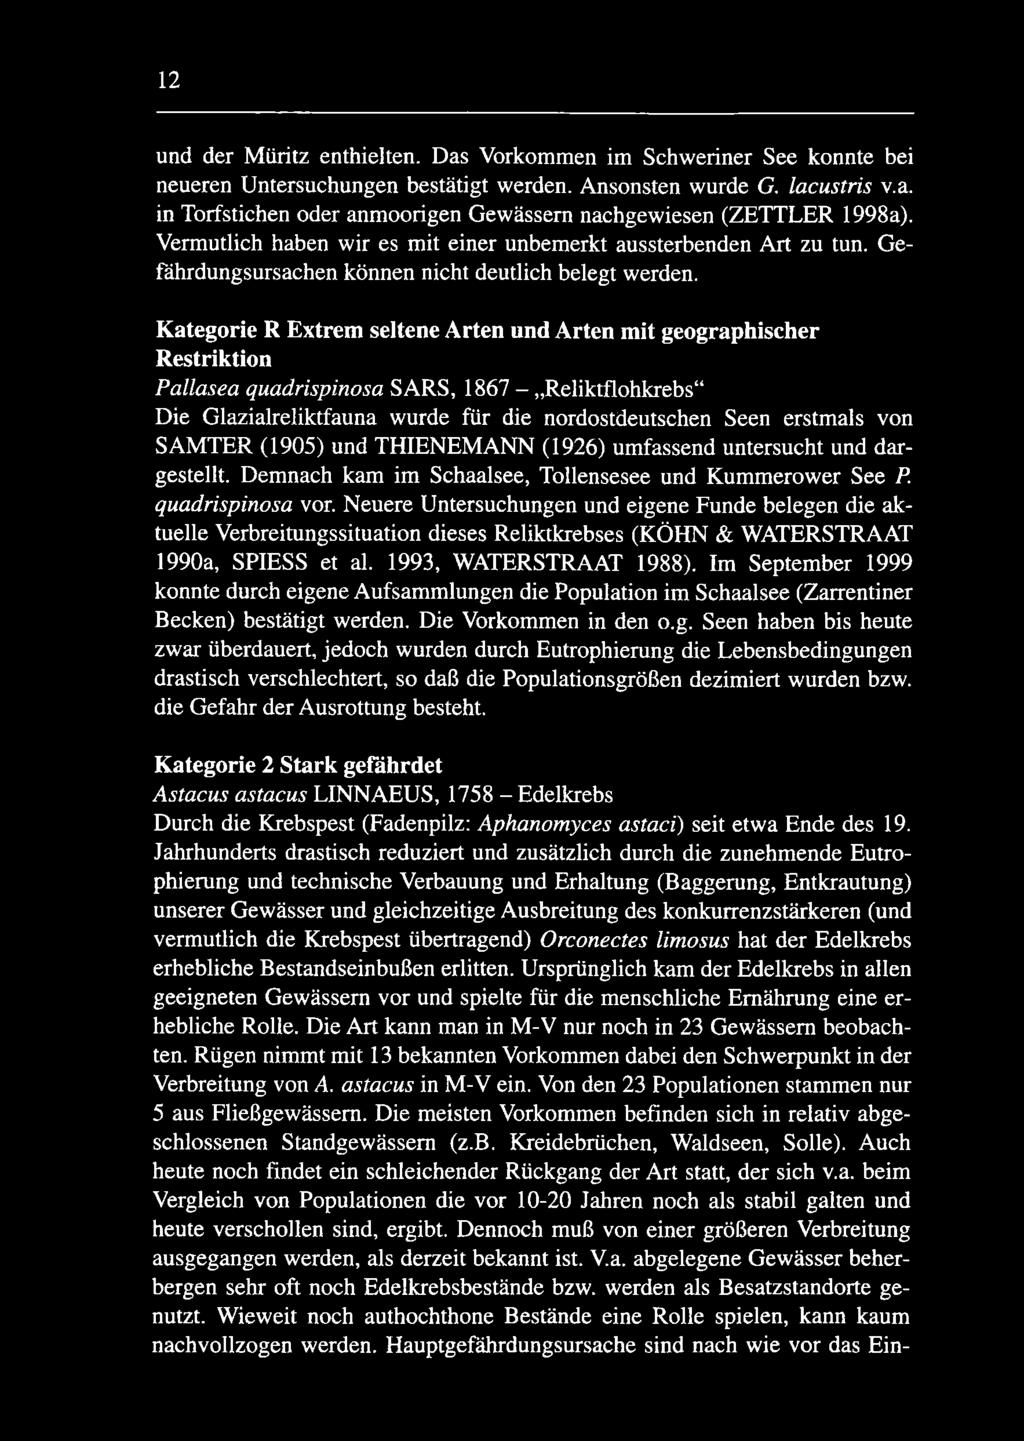 Kategorie R Extrem seltene Arten und Arten mit geographischer Restriktion Pallasea quadrispinosa SARS, 1867 - Reliktflohkrebs Die Glazialreliktfauna wurde für die nordostdeutschen Seen erstmals von